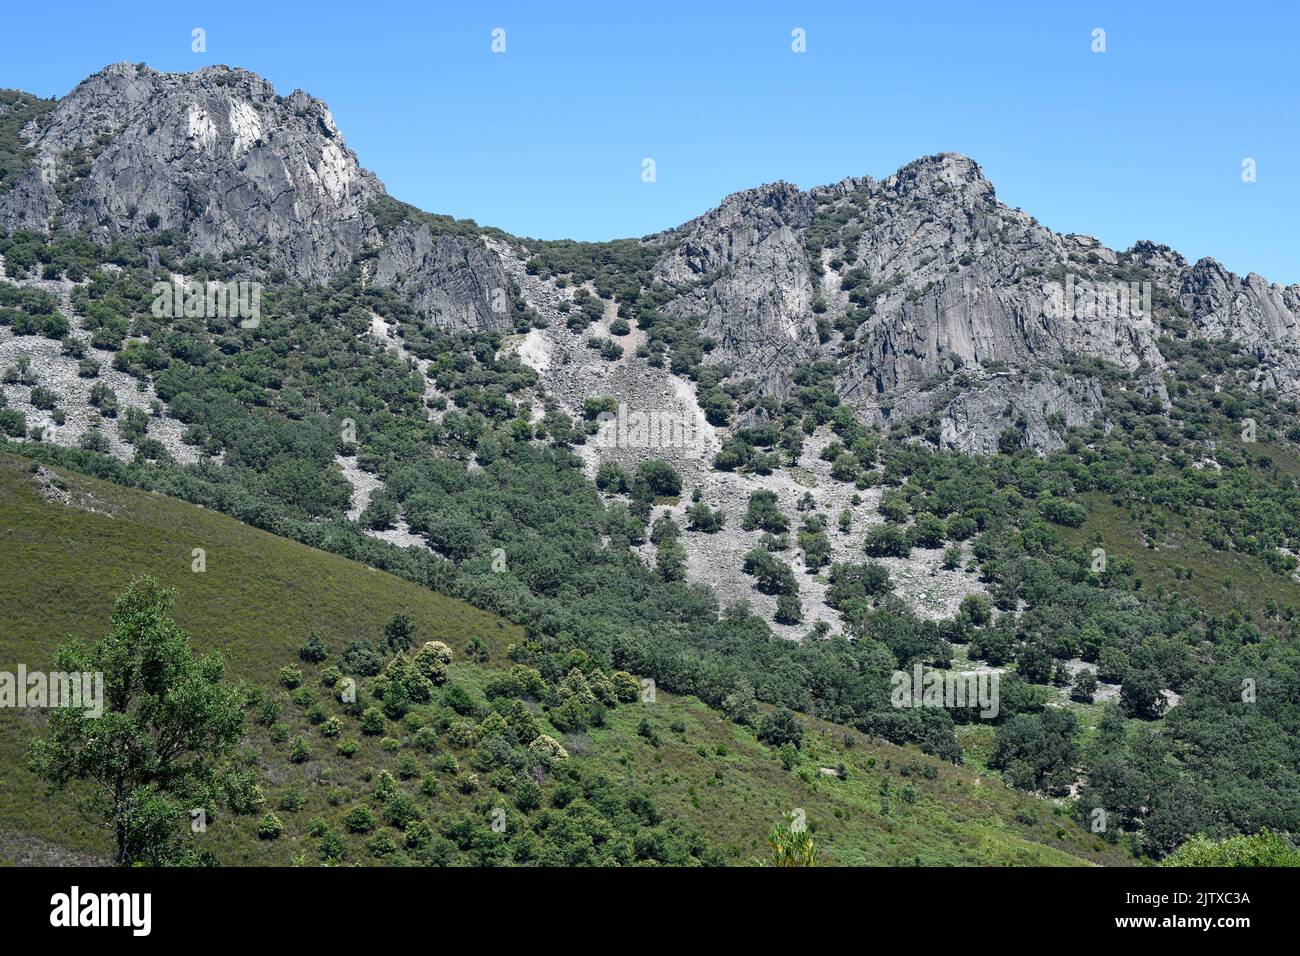 Appalachisches Relief mit Armorikanquarziten in Villuercas-Ibores-Jara Geopark, Caceres, Expremadura, Spanien. Stockfoto